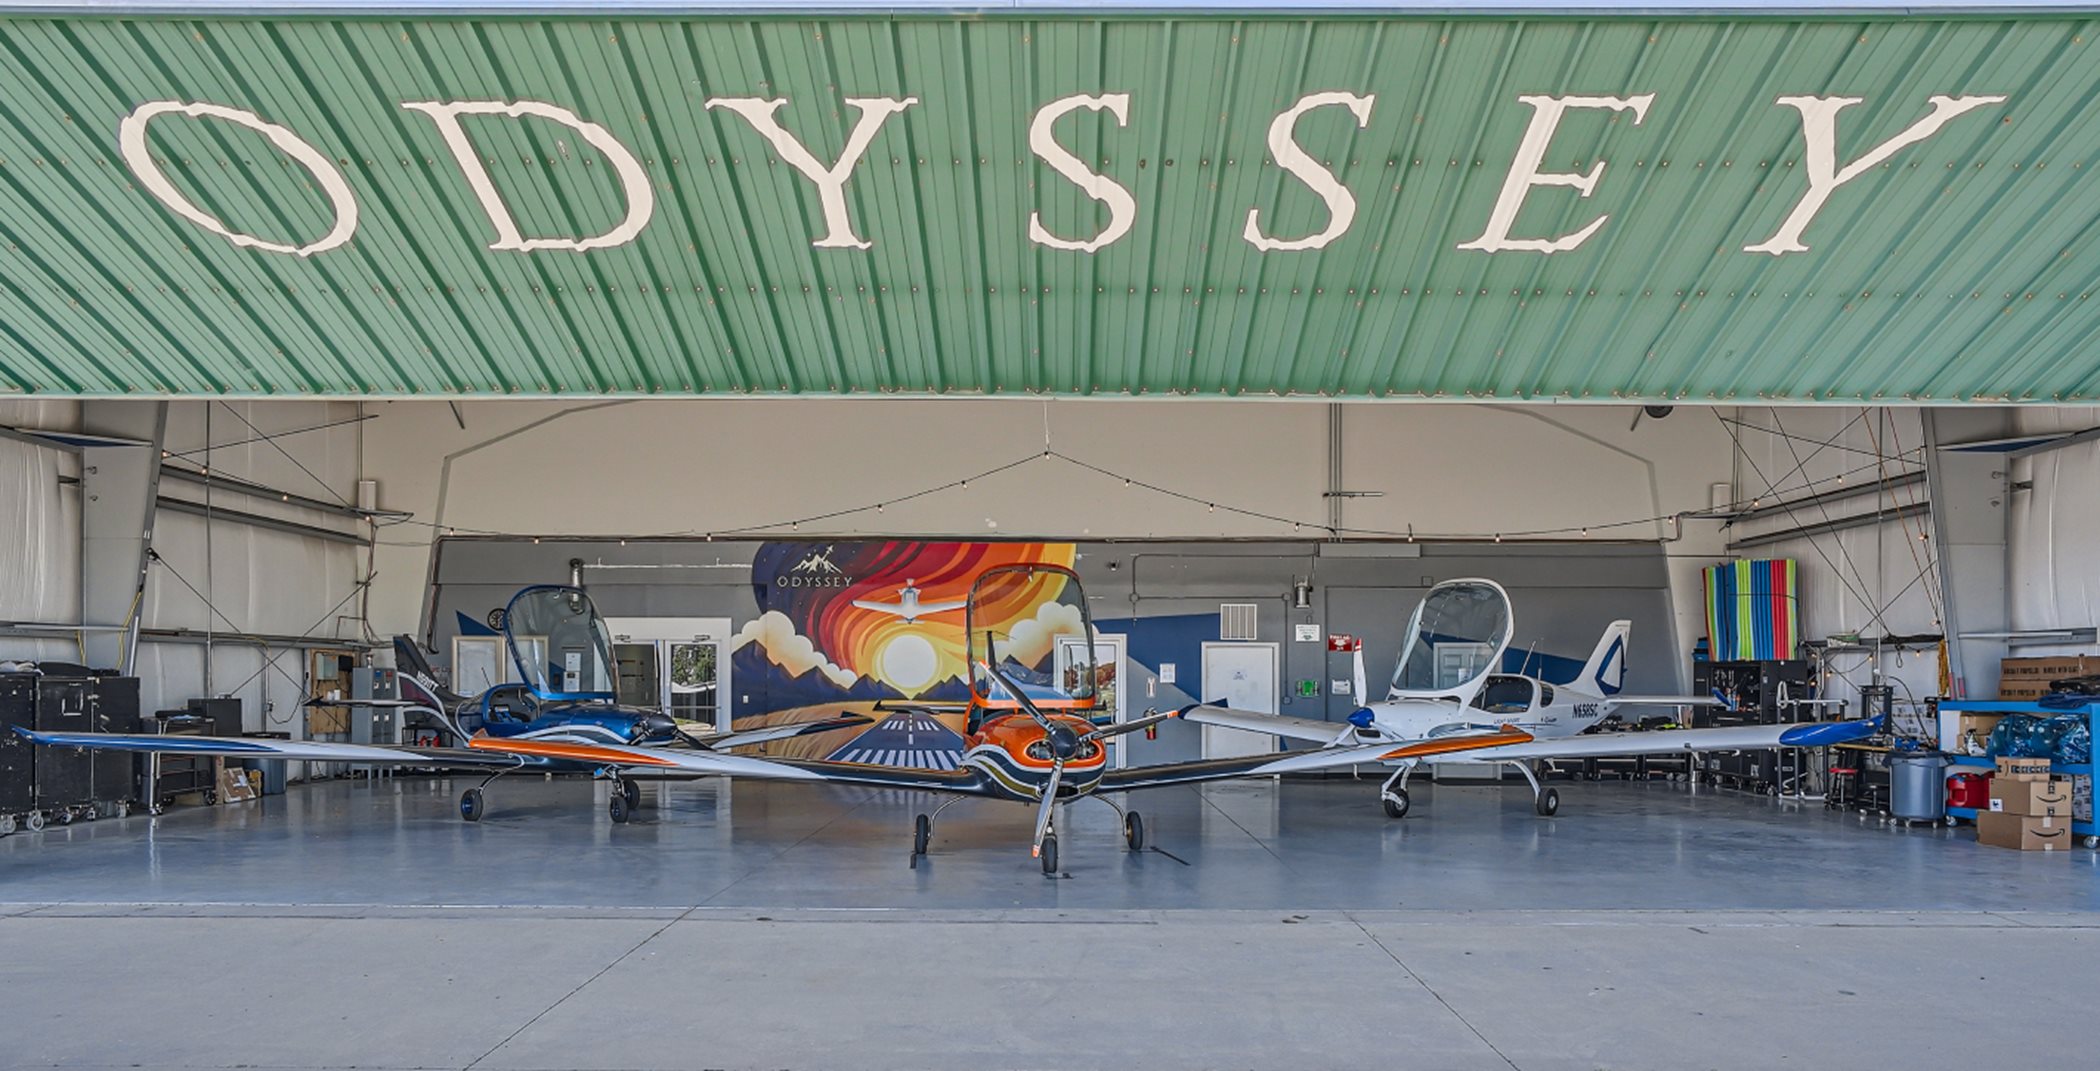 Odyssey Pilot School